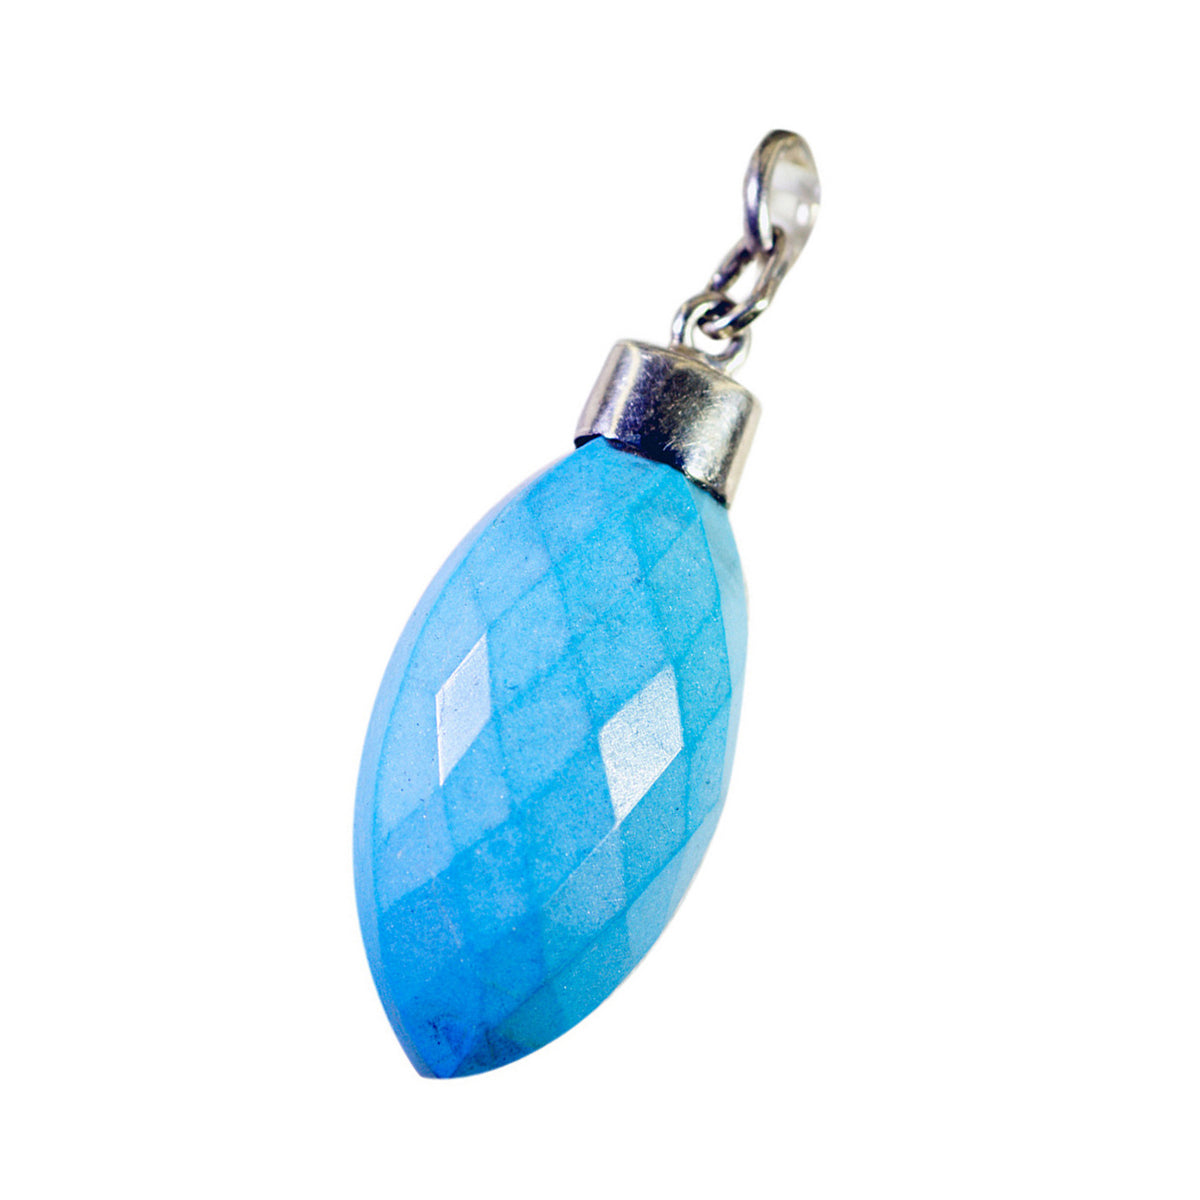 Подвеска riyo fanciable gems Marquise Checker, синяя, бирюзовая, из цельного серебра, подарок на годовщину